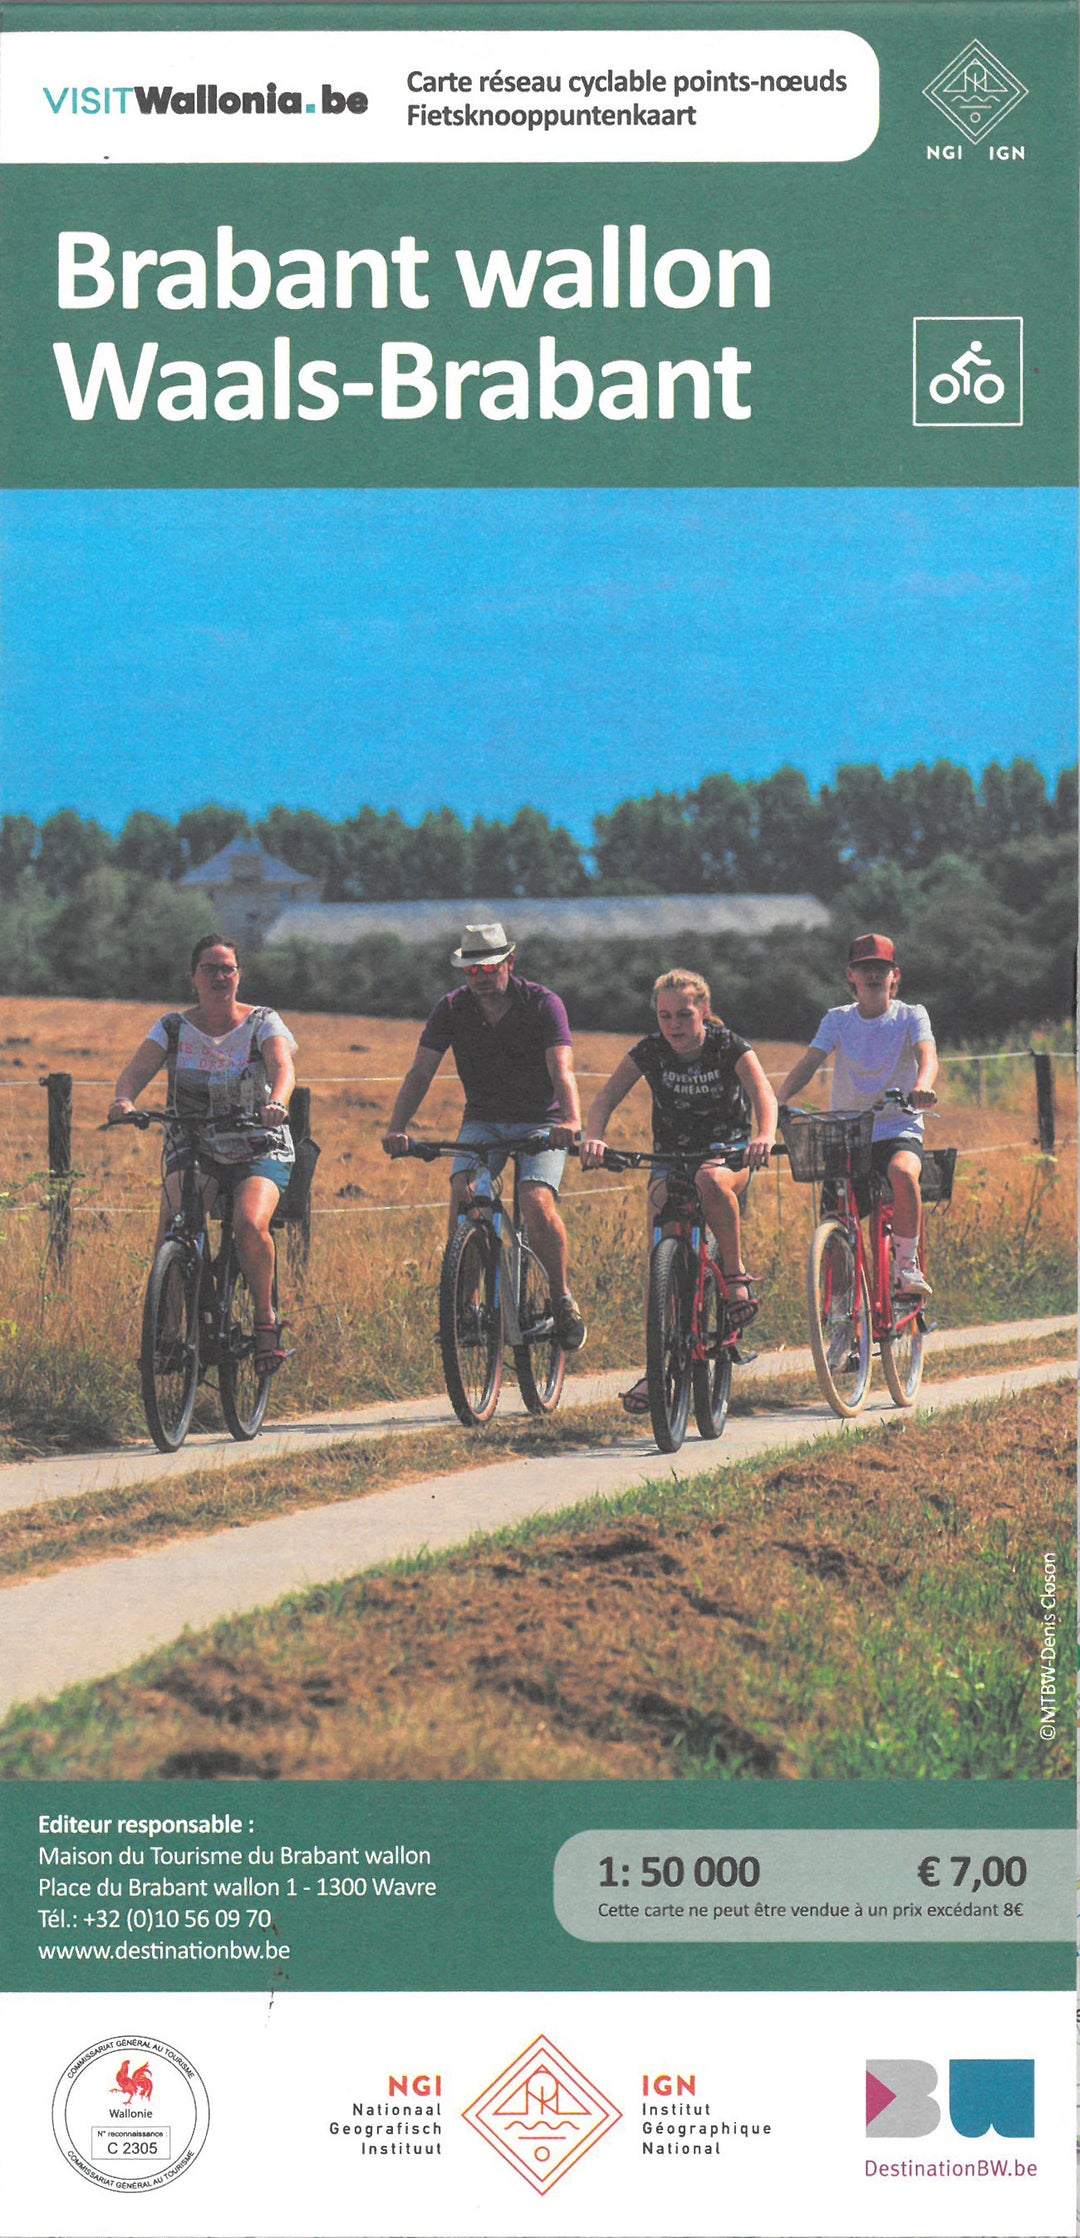 Cycling map - Walloon Brabant cycle network | NGI